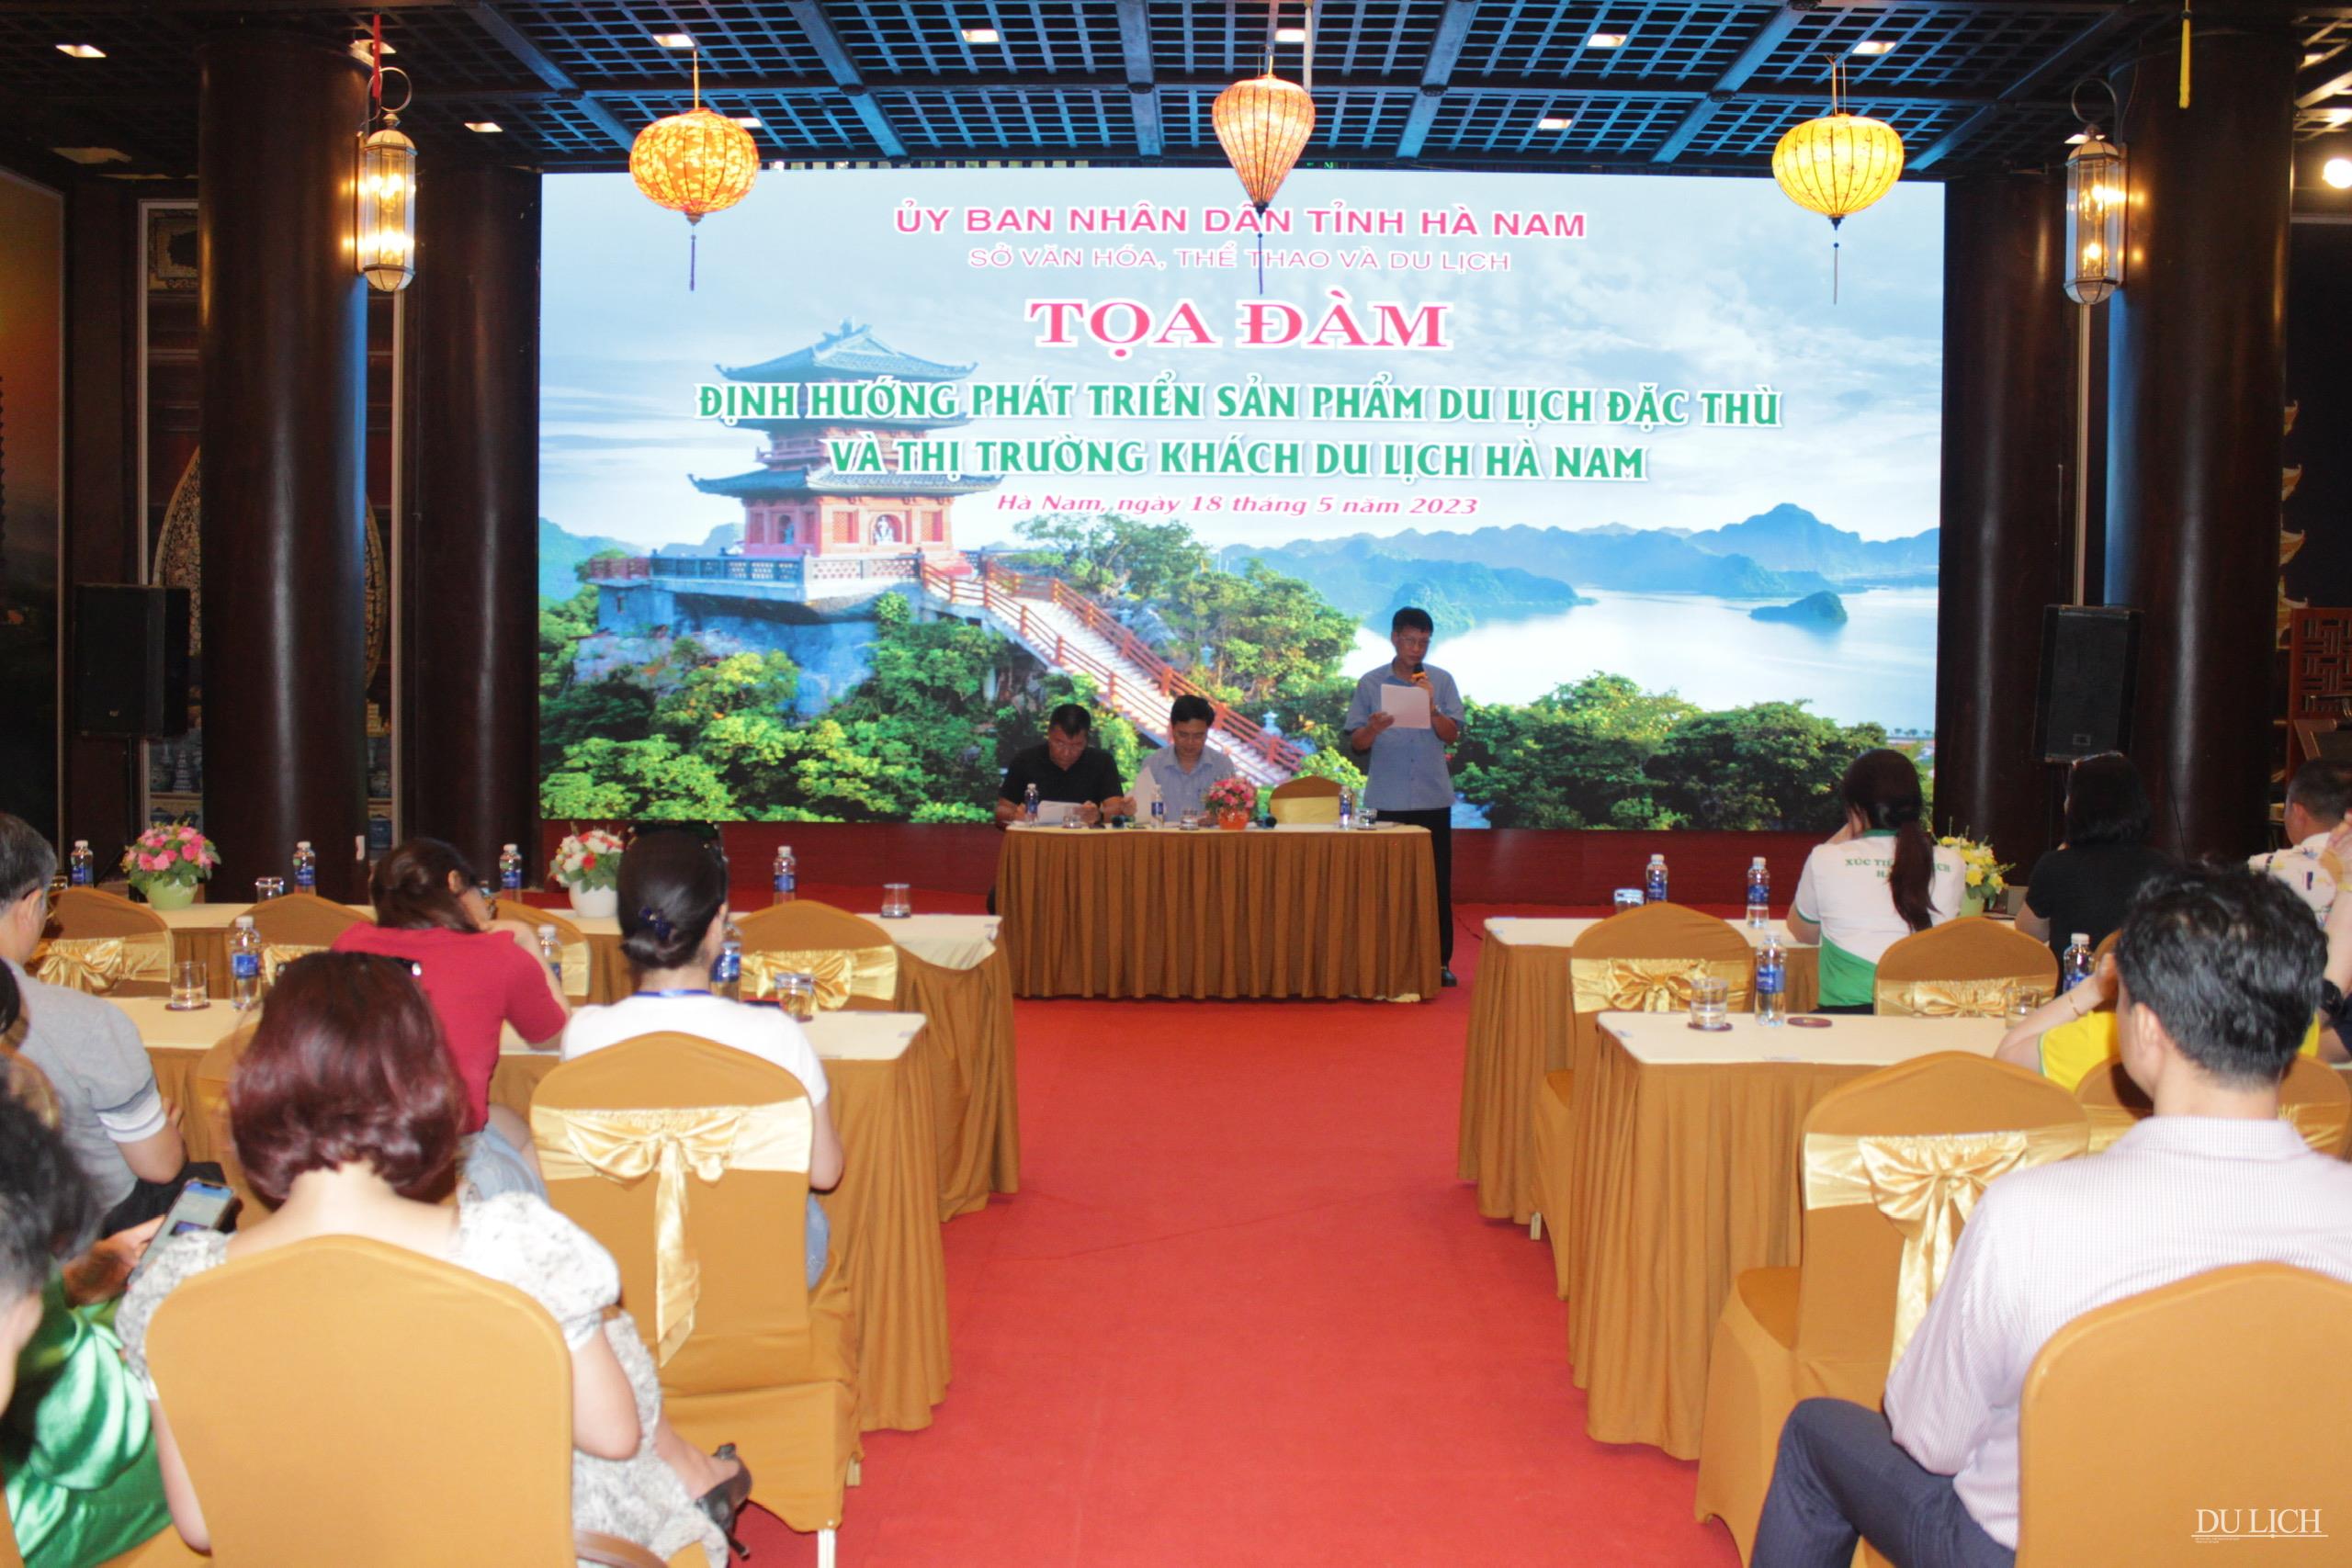 Tọa đàm “Định hướng phát triển sản phẩm du lịch đặc thù và thị trường khách du lịch Hà Nam”